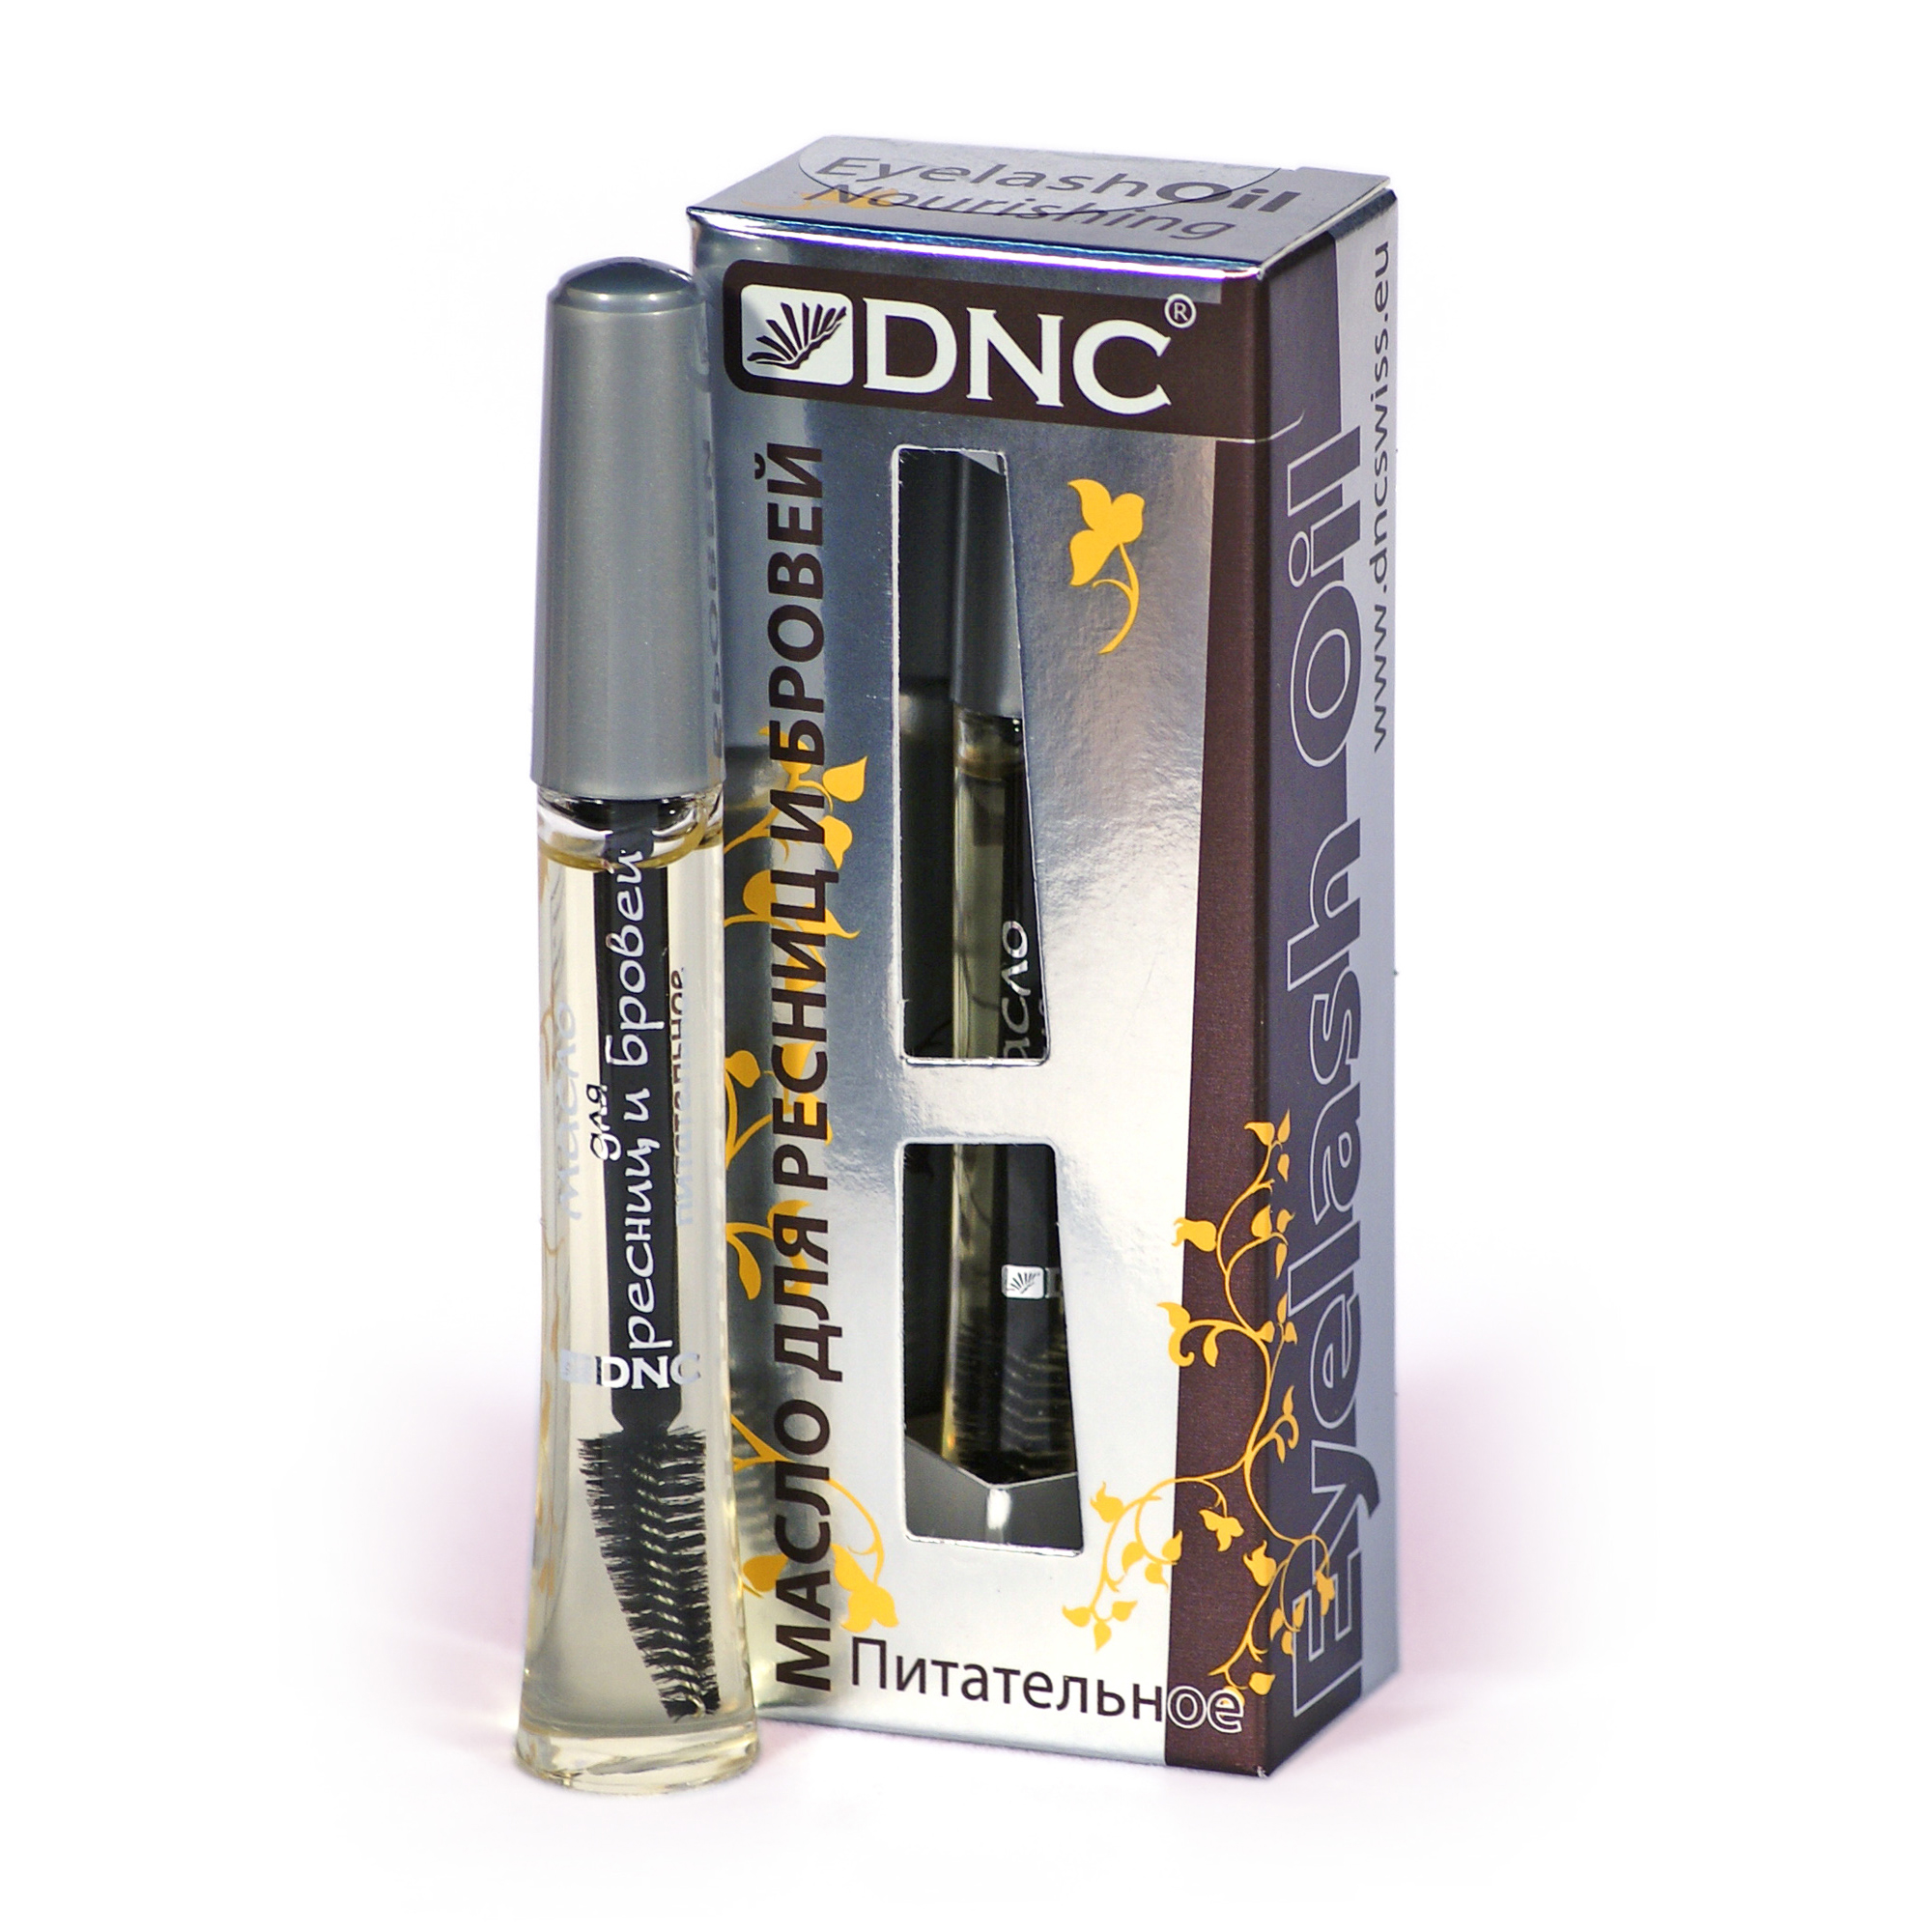 DNC Масло косметическое для ресниц и бровей  питательное, 12 мл - фото 1